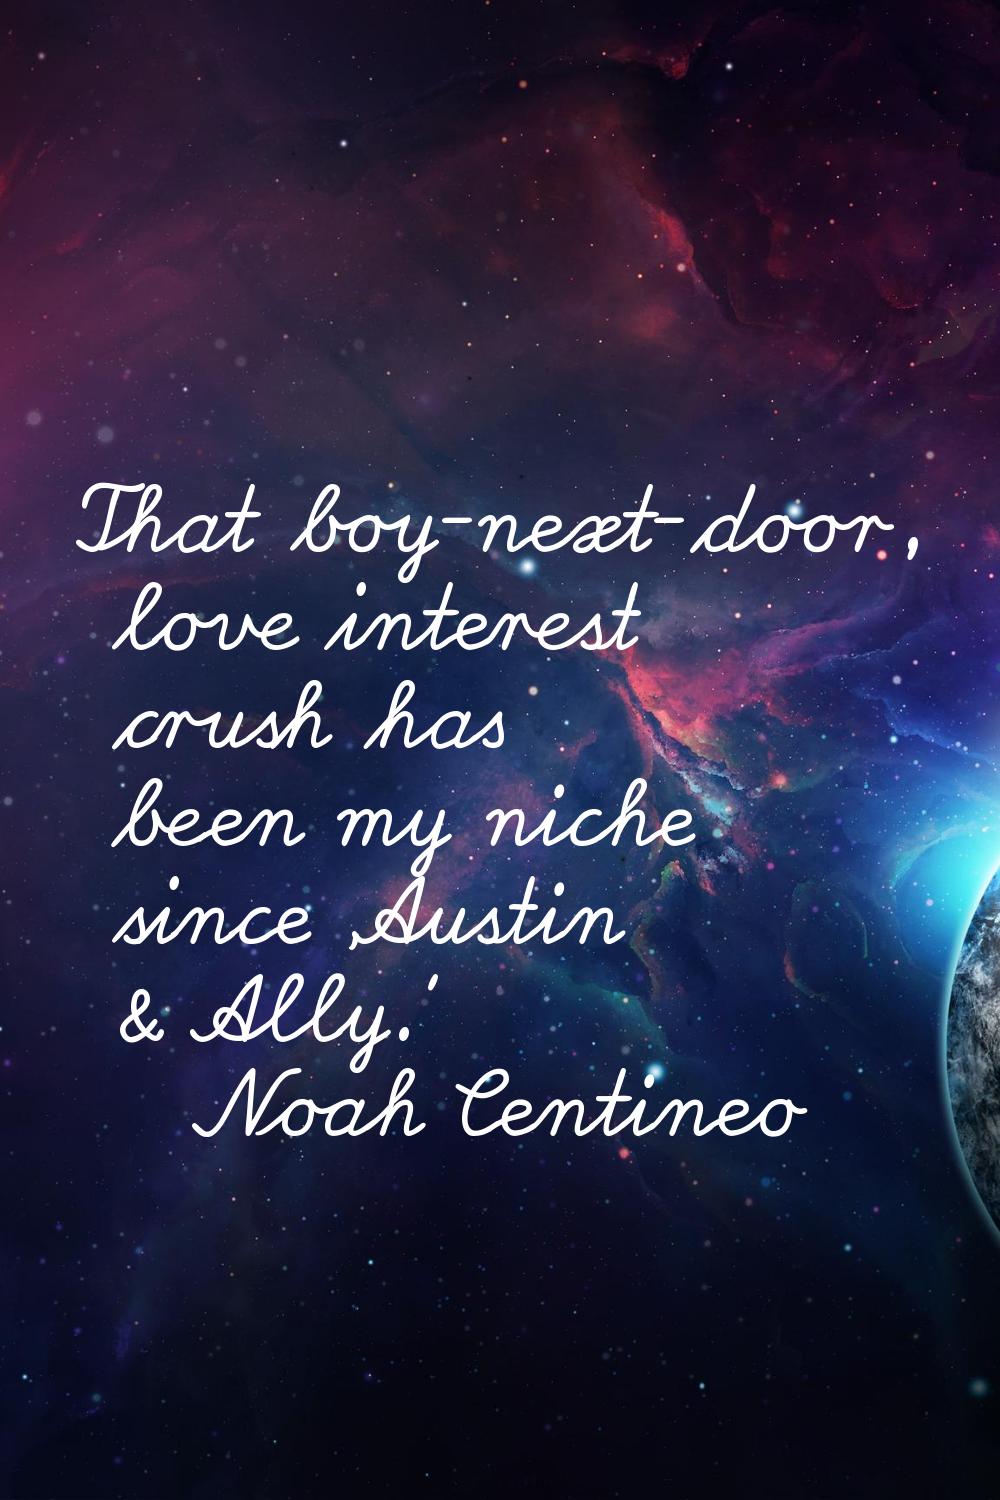 That boy-next-door, love interest crush has been my niche since 'Austin & Ally.'